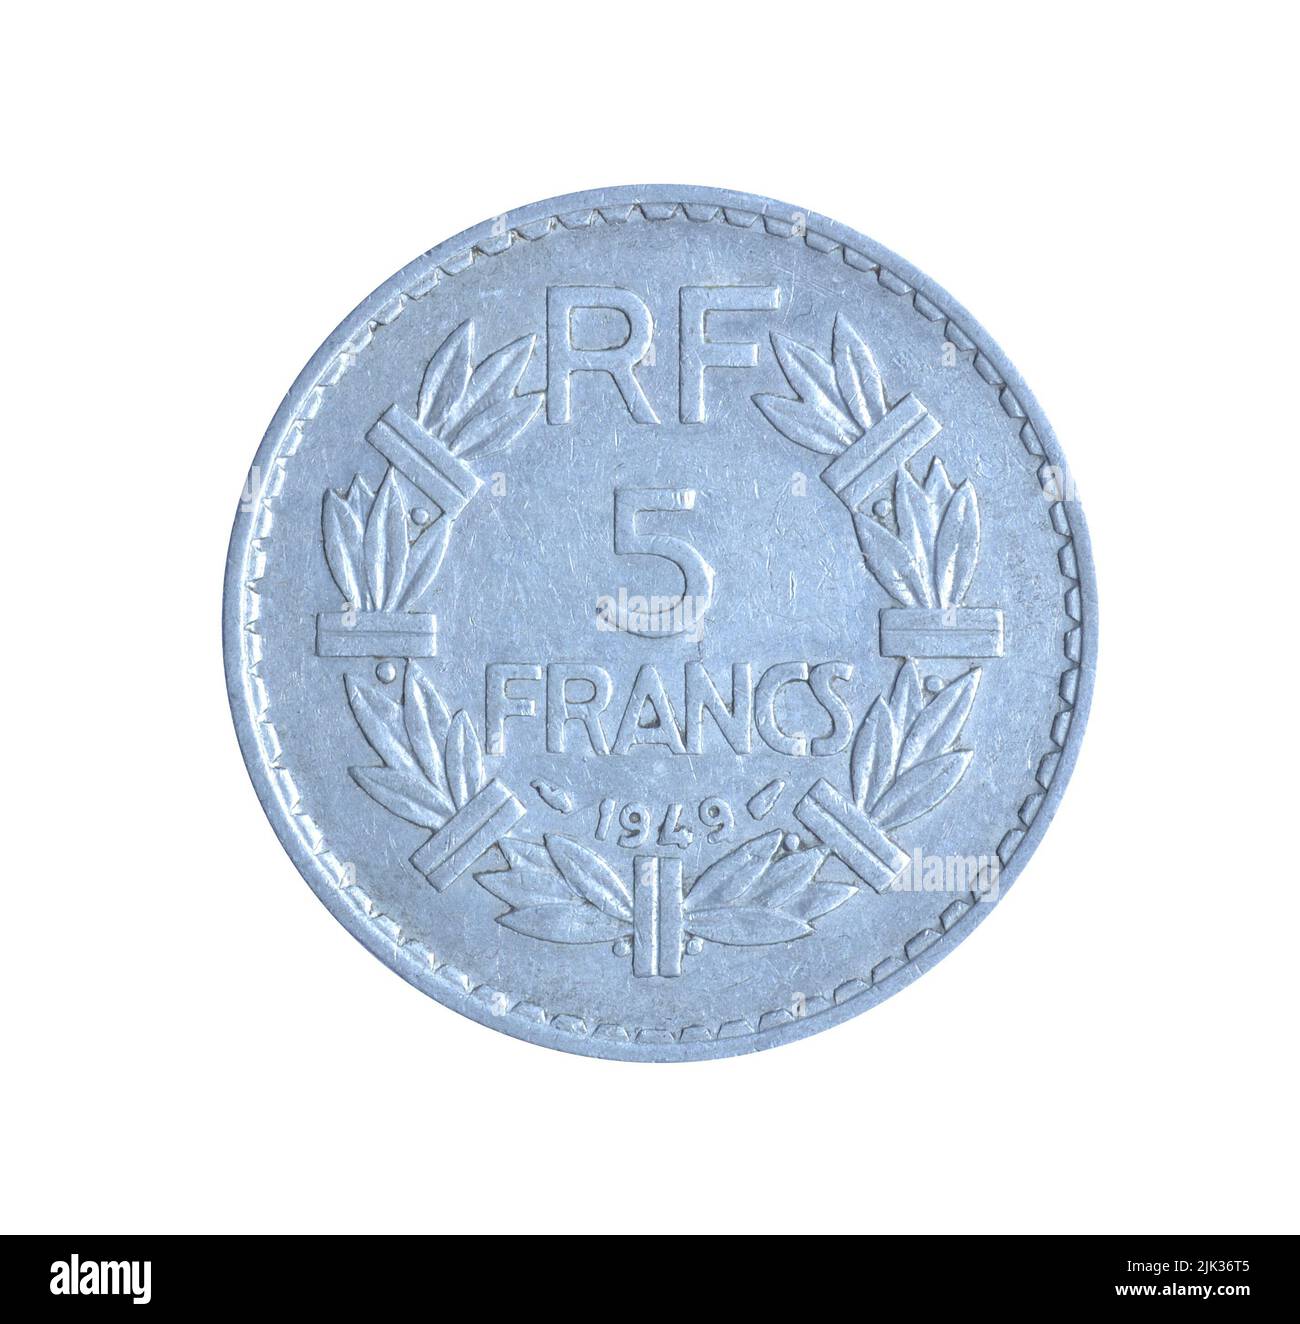 Fünf-Francs-Münze, die 1949 von Frankreich hergestellt wurde, die eine überstehende Denomination innerhalb eines abgetrennten Kranzes zeigt Stockfoto